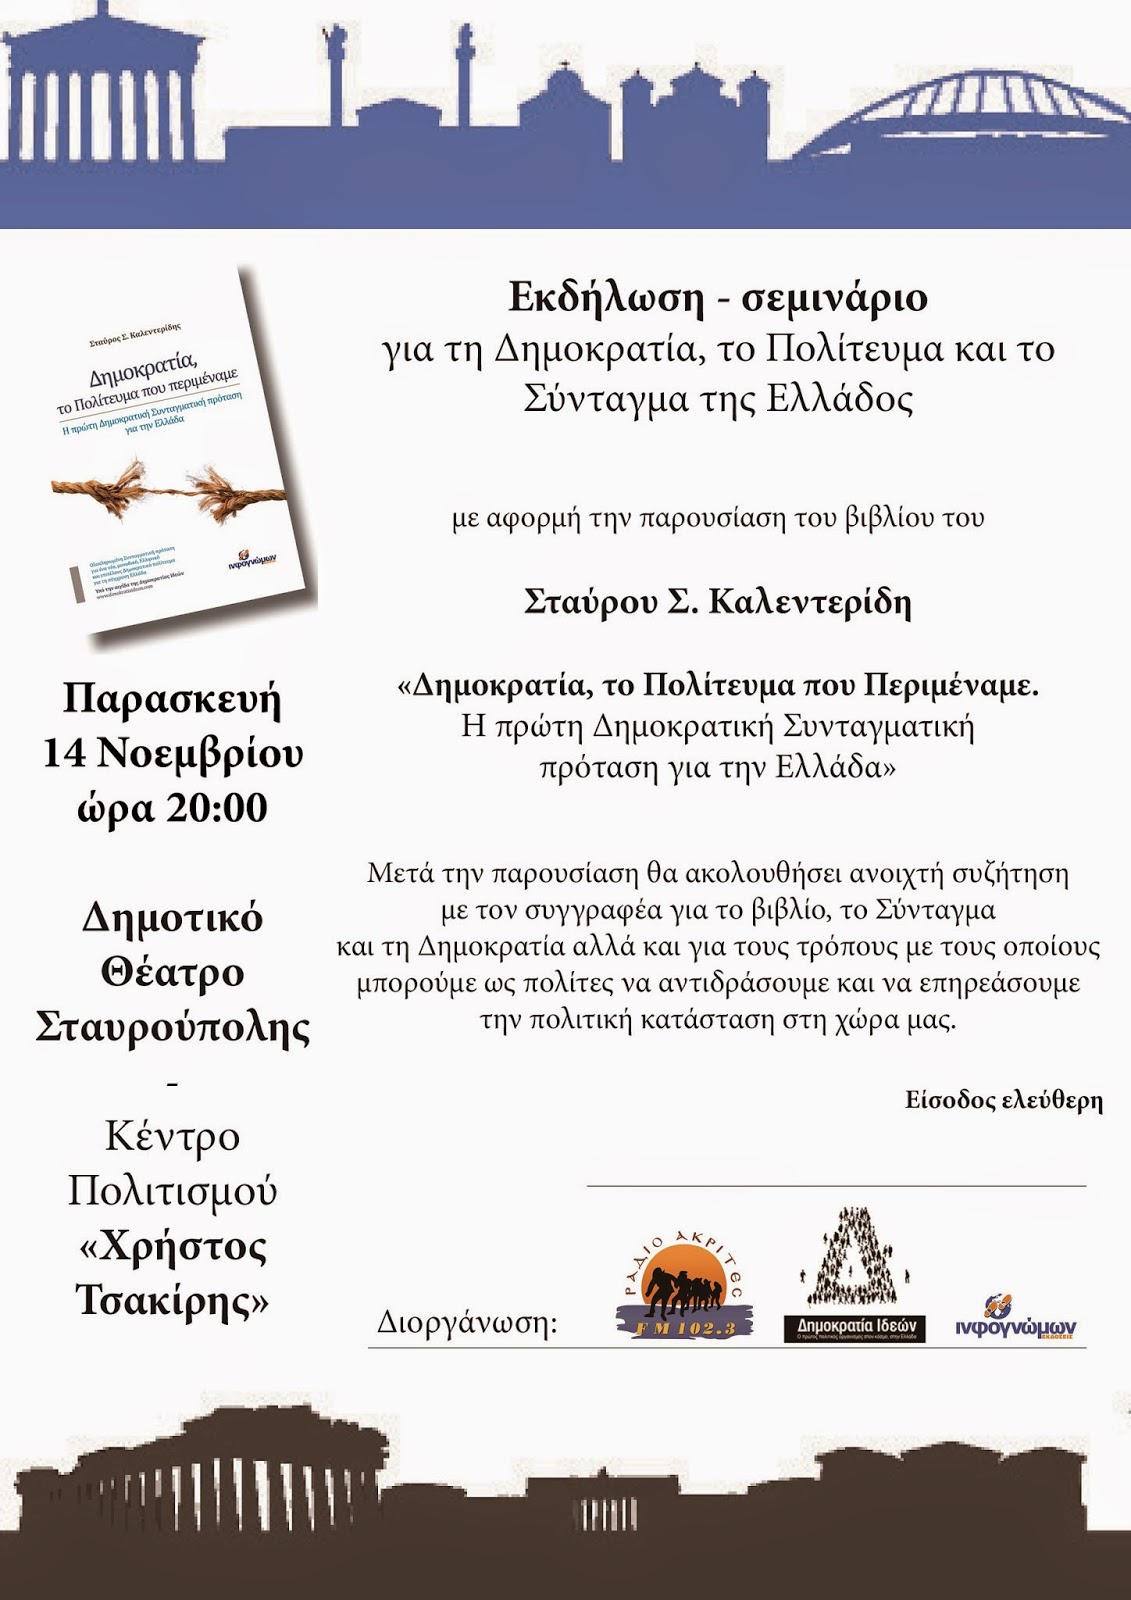 Εκδήλωση-σεμινάριο του Σταύρου Σ. Καλεντερίδη για τη Δημοκρατία, το Πολίτευμα και το Σύνταγμα της Ελλάδος - Φωτογραφία 1